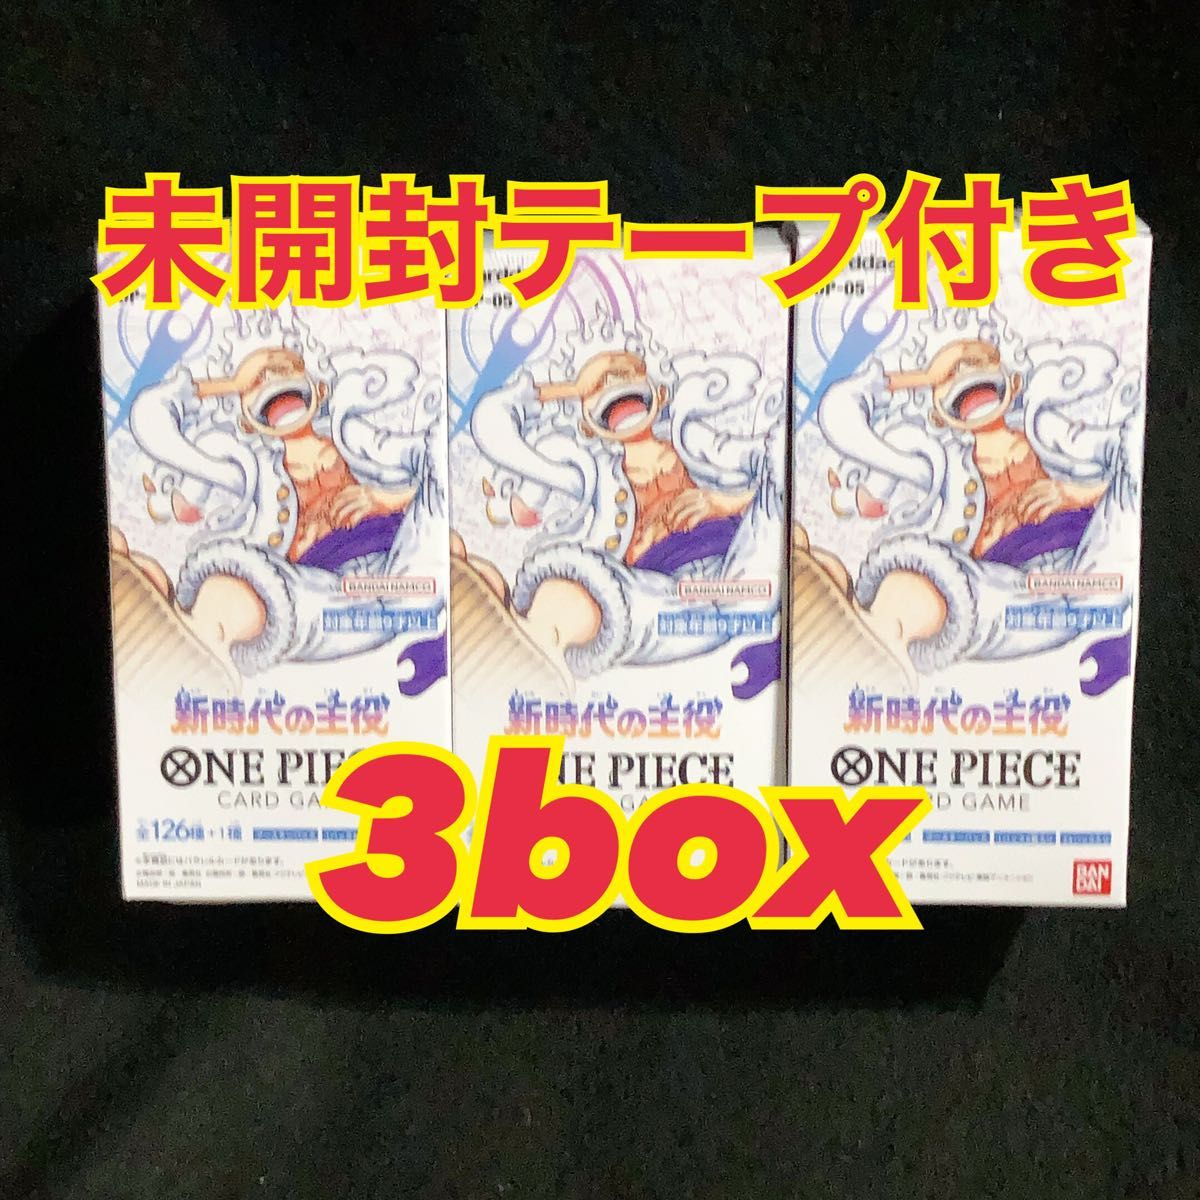 新品未開封テープ付き ワンピース カードゲーム 新時代の主役 box 3BOX